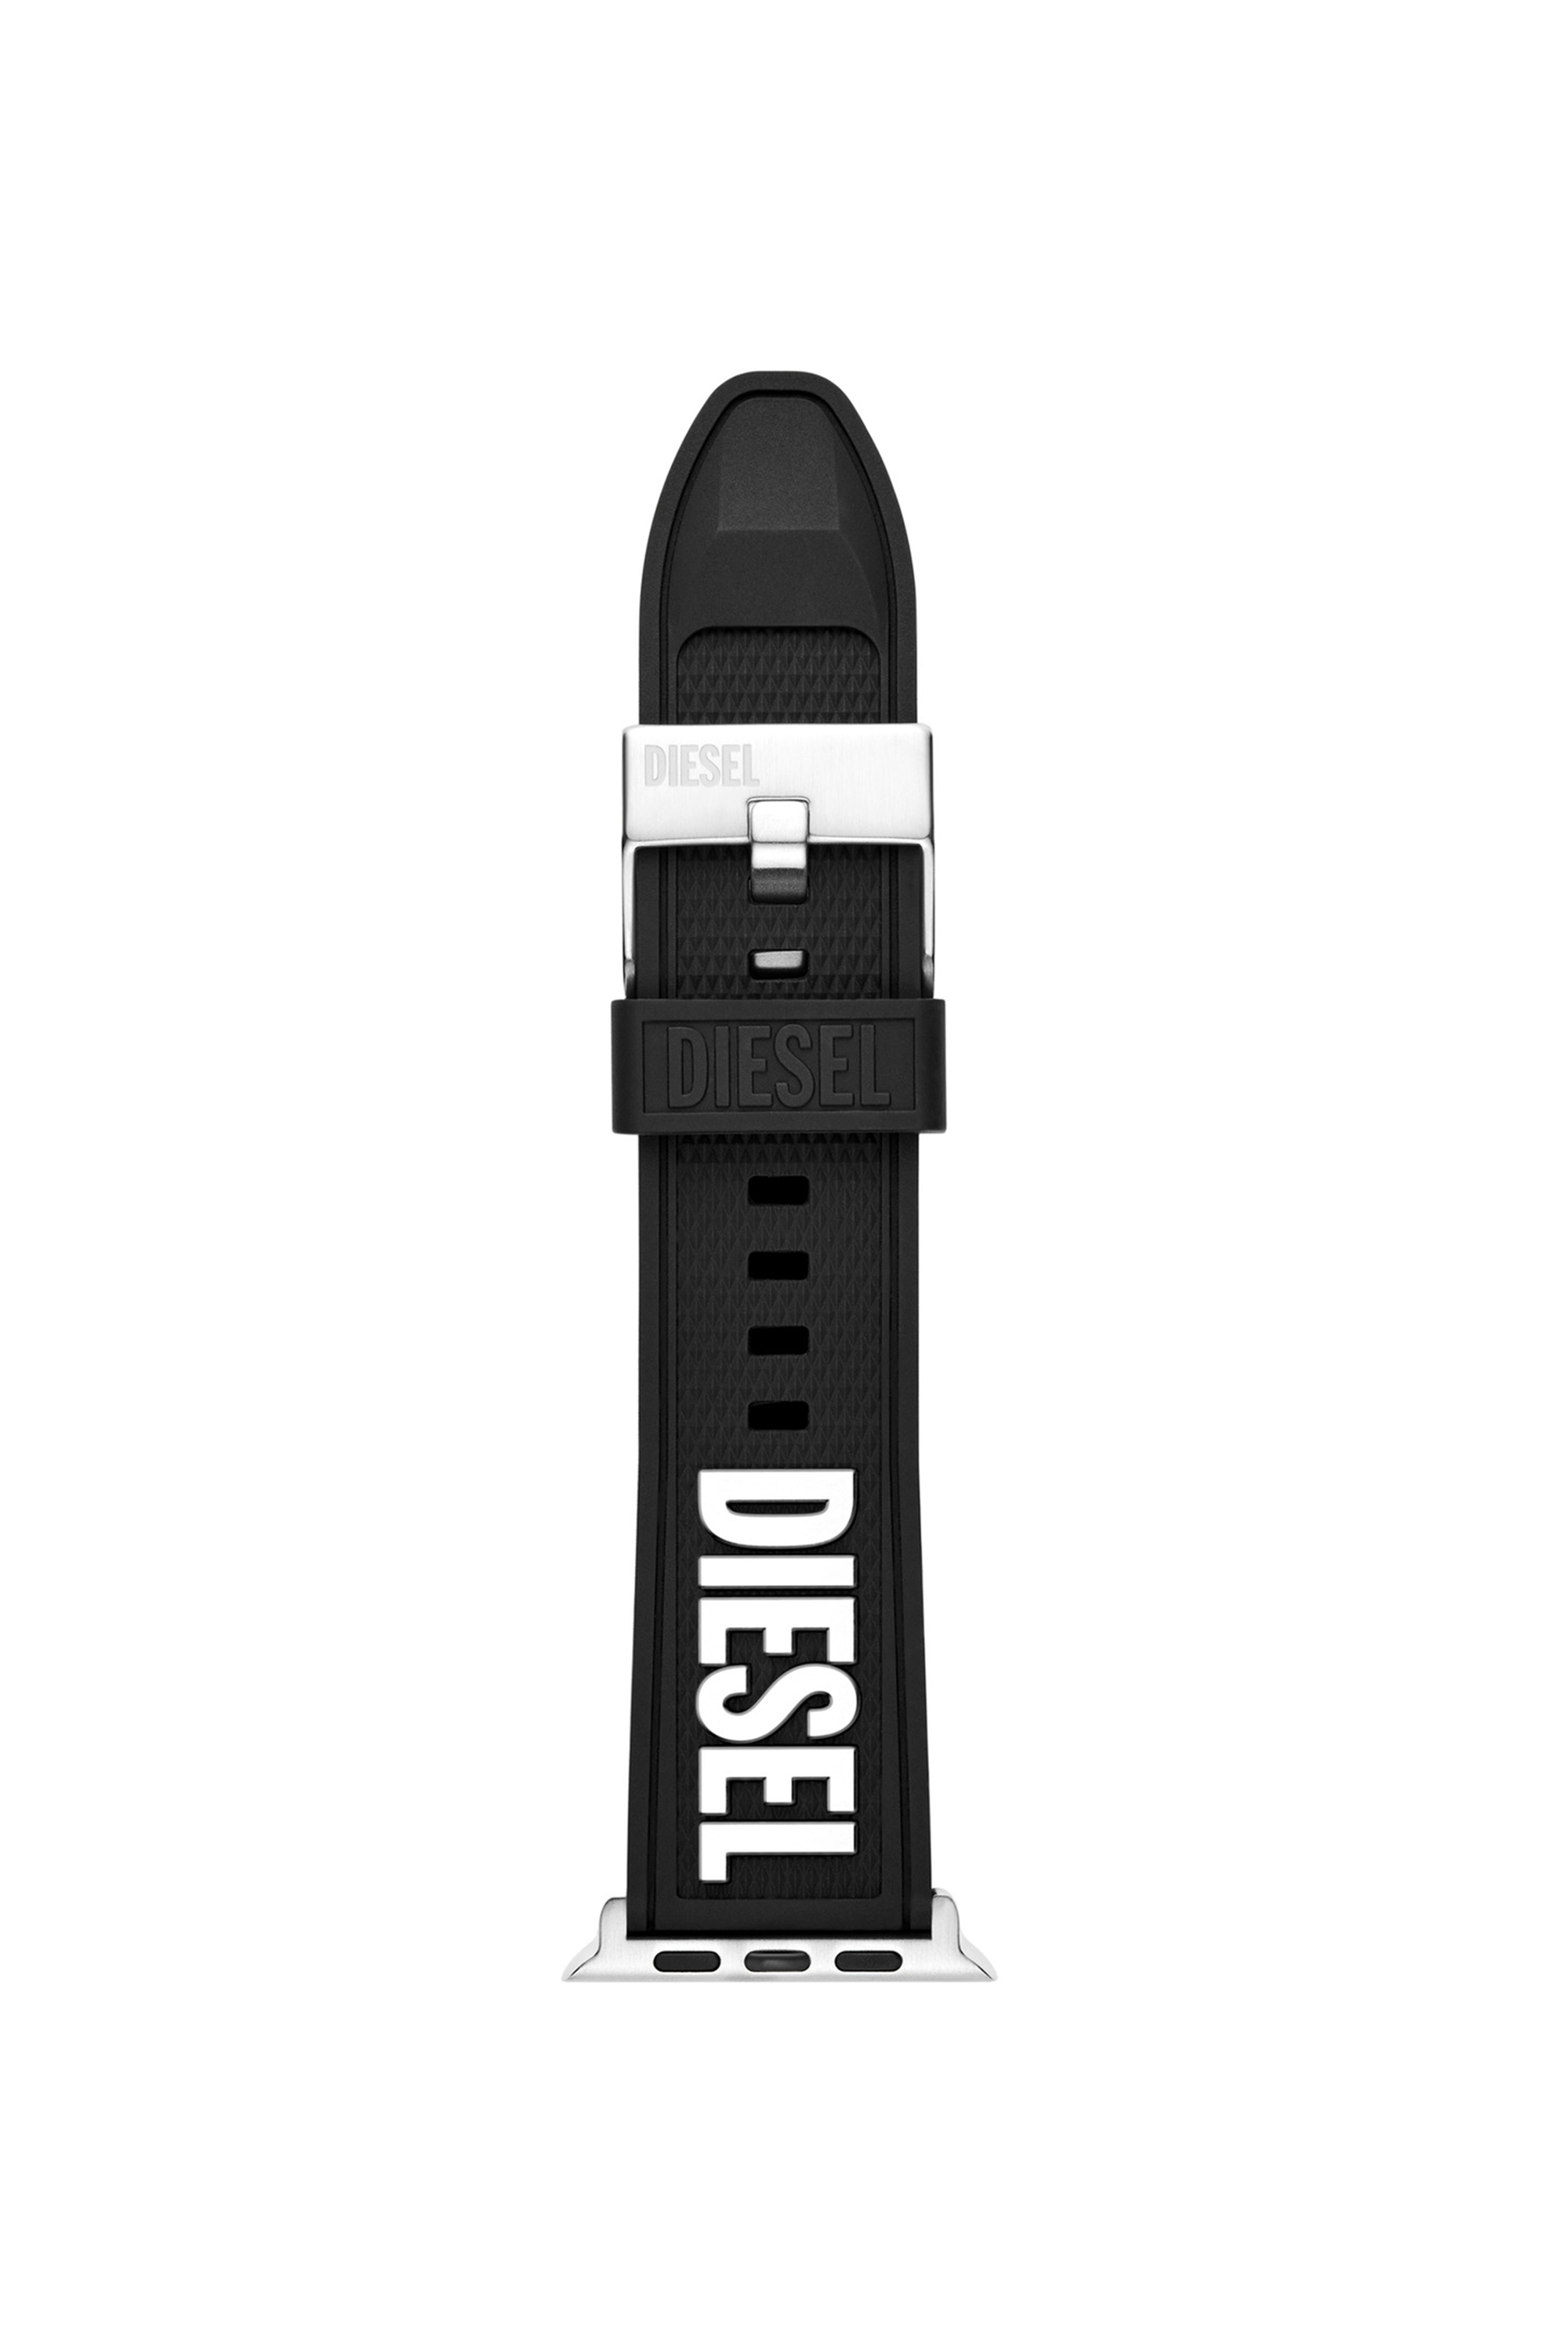 Diesel - DSS011, Nero - Image 1